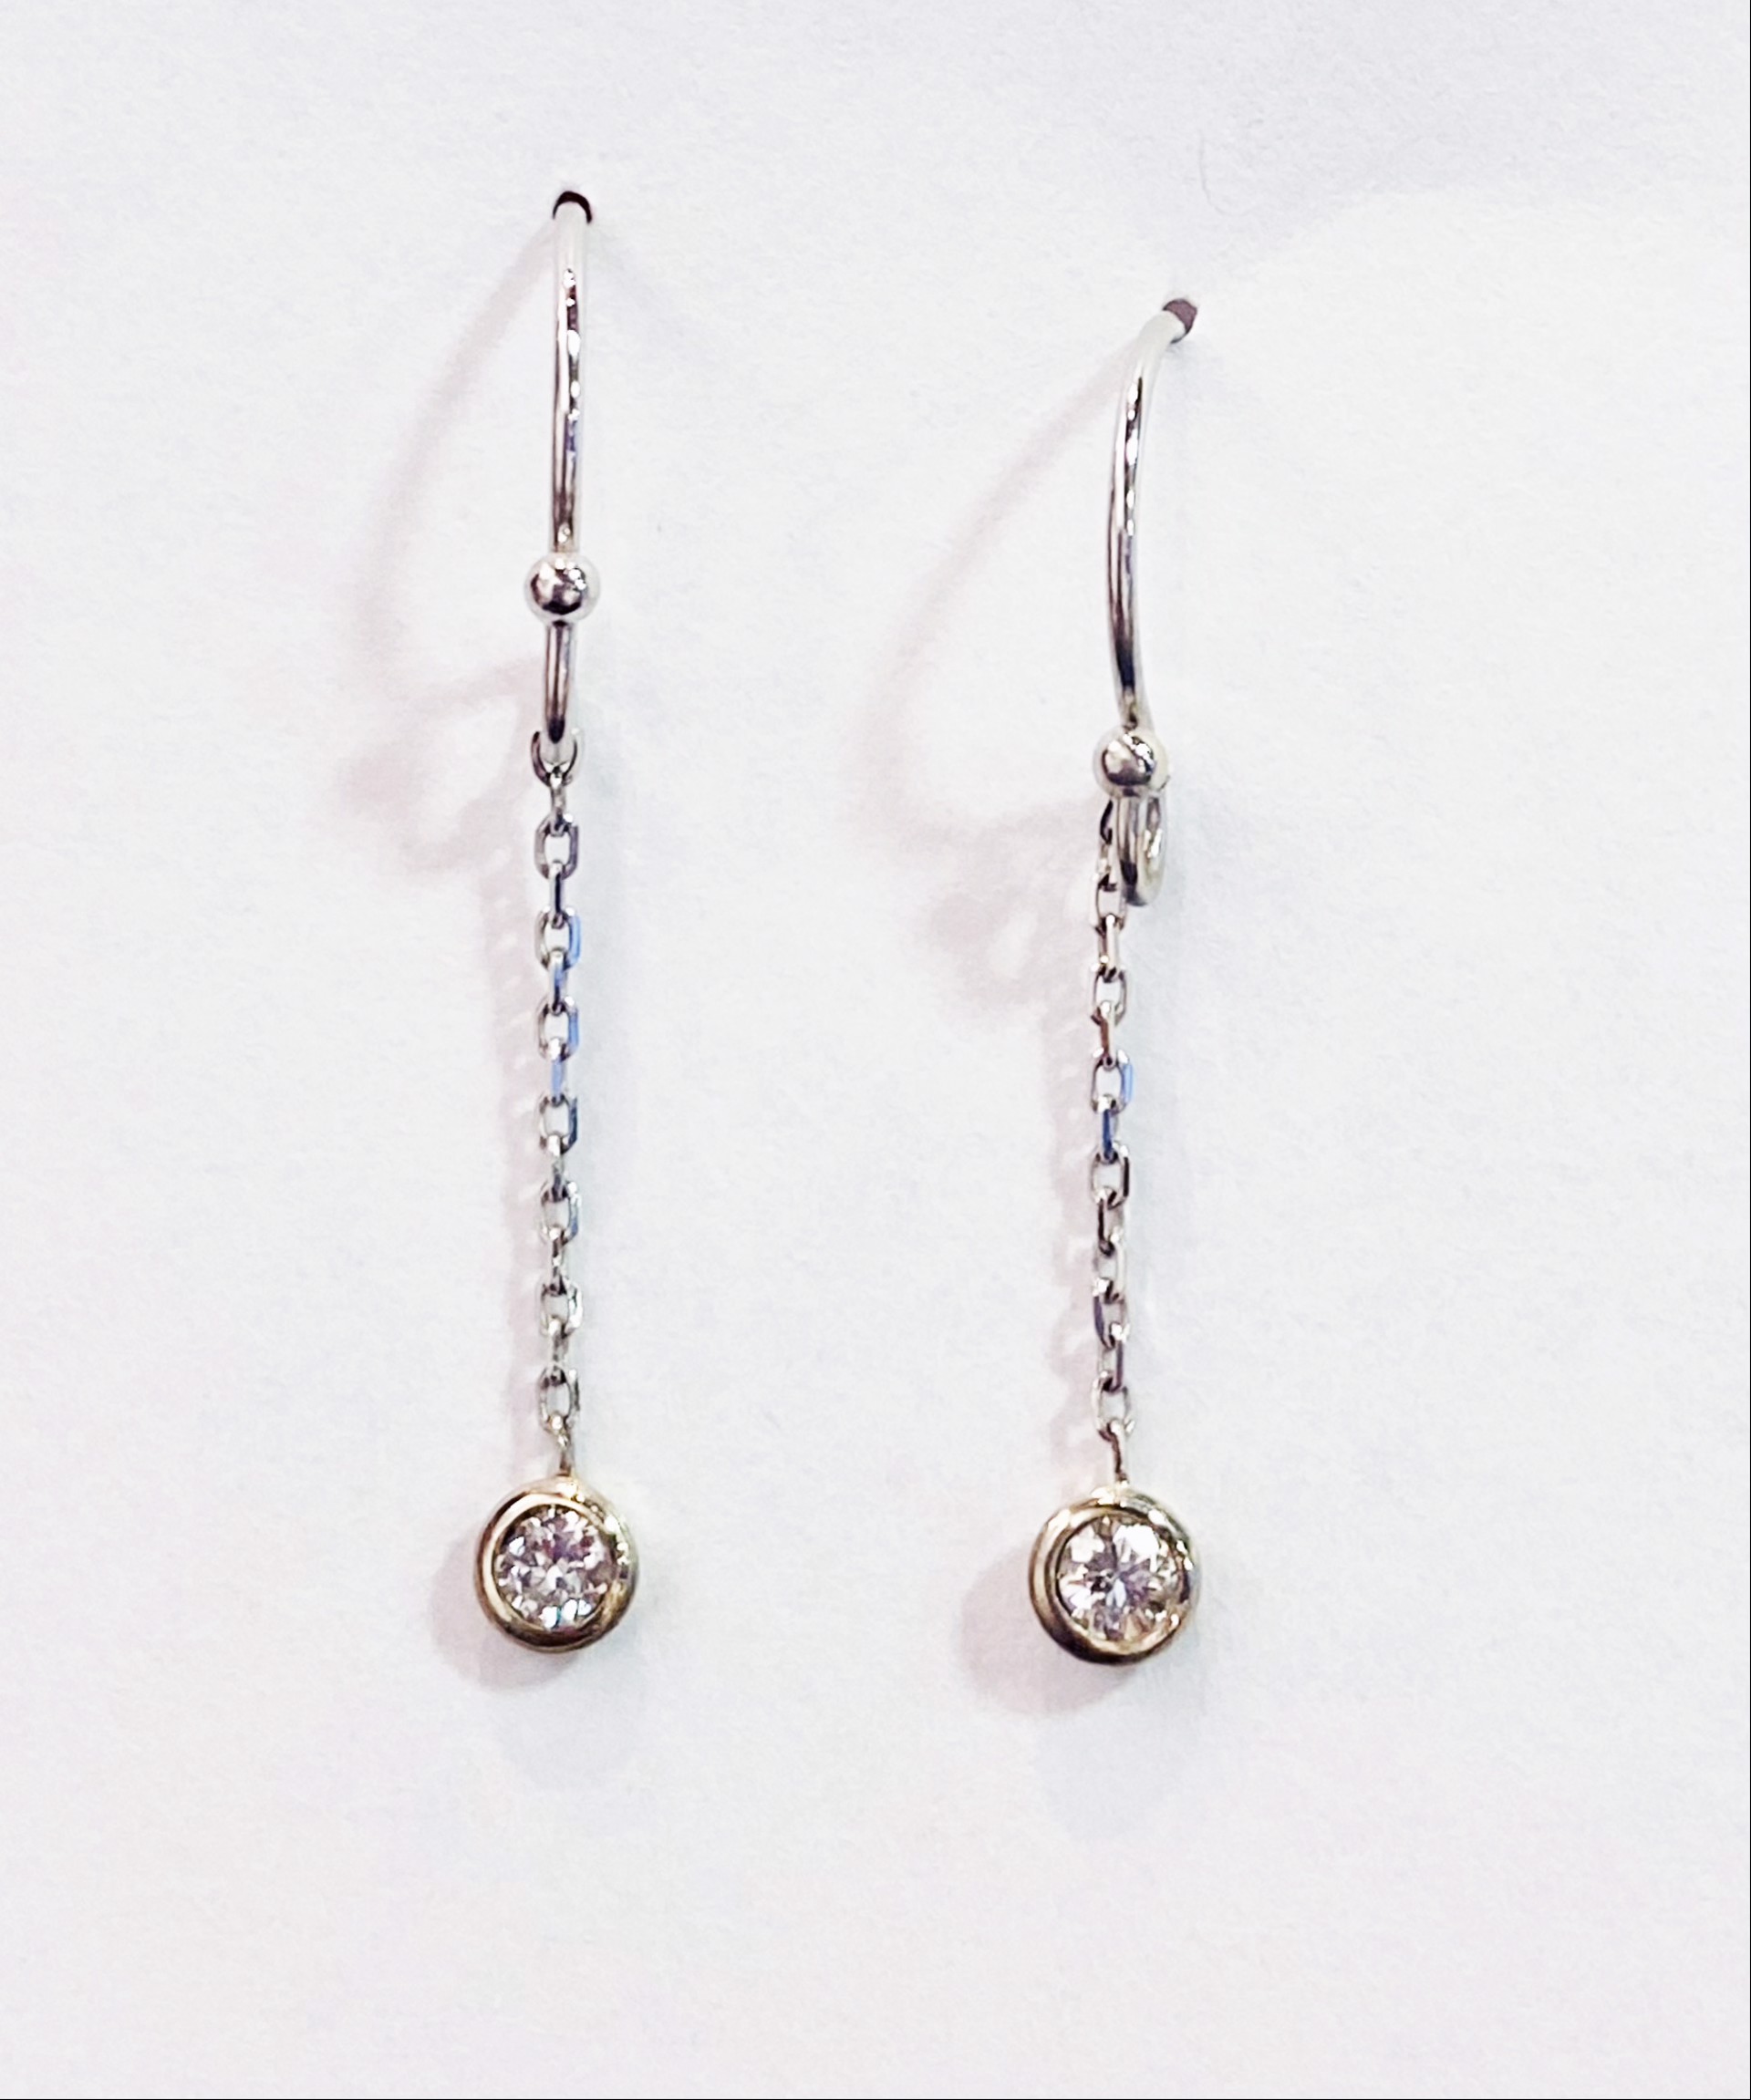 Diamond Earrings by D'ETTE DELFORGE